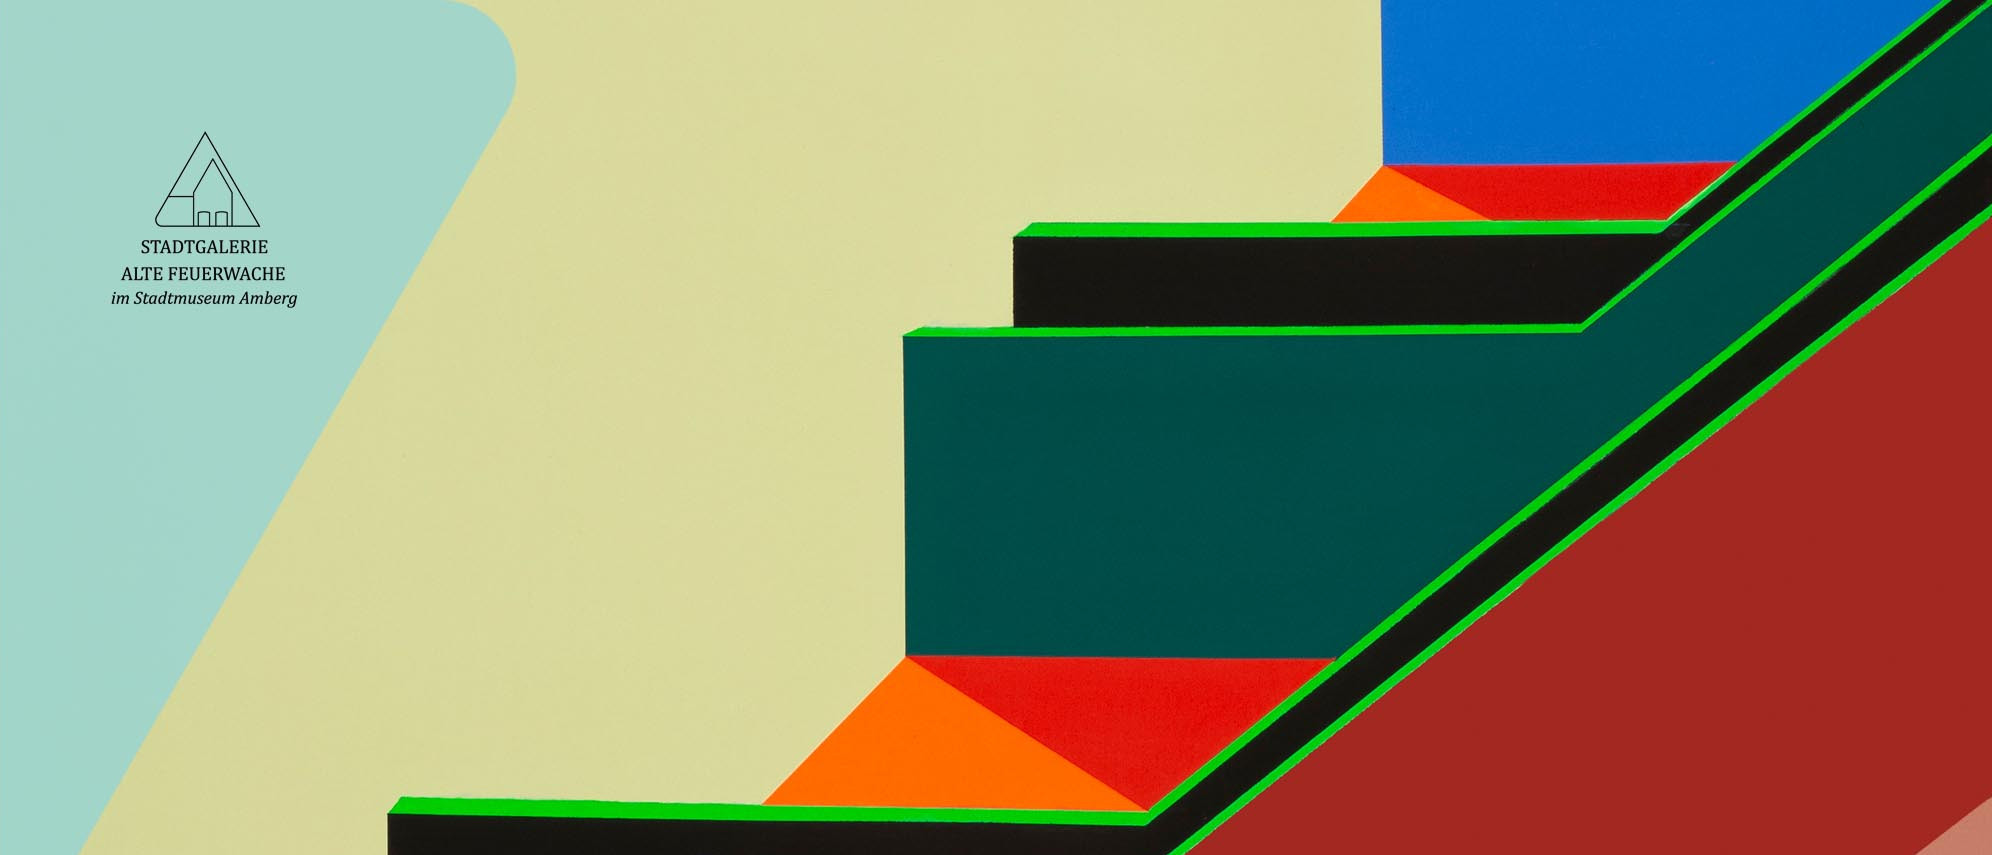 Detail aus einem Kunstwerk von Sandra Tröger mit treppenartig gestuften Rechtecken und Trapezen in verschiedenen Farben.